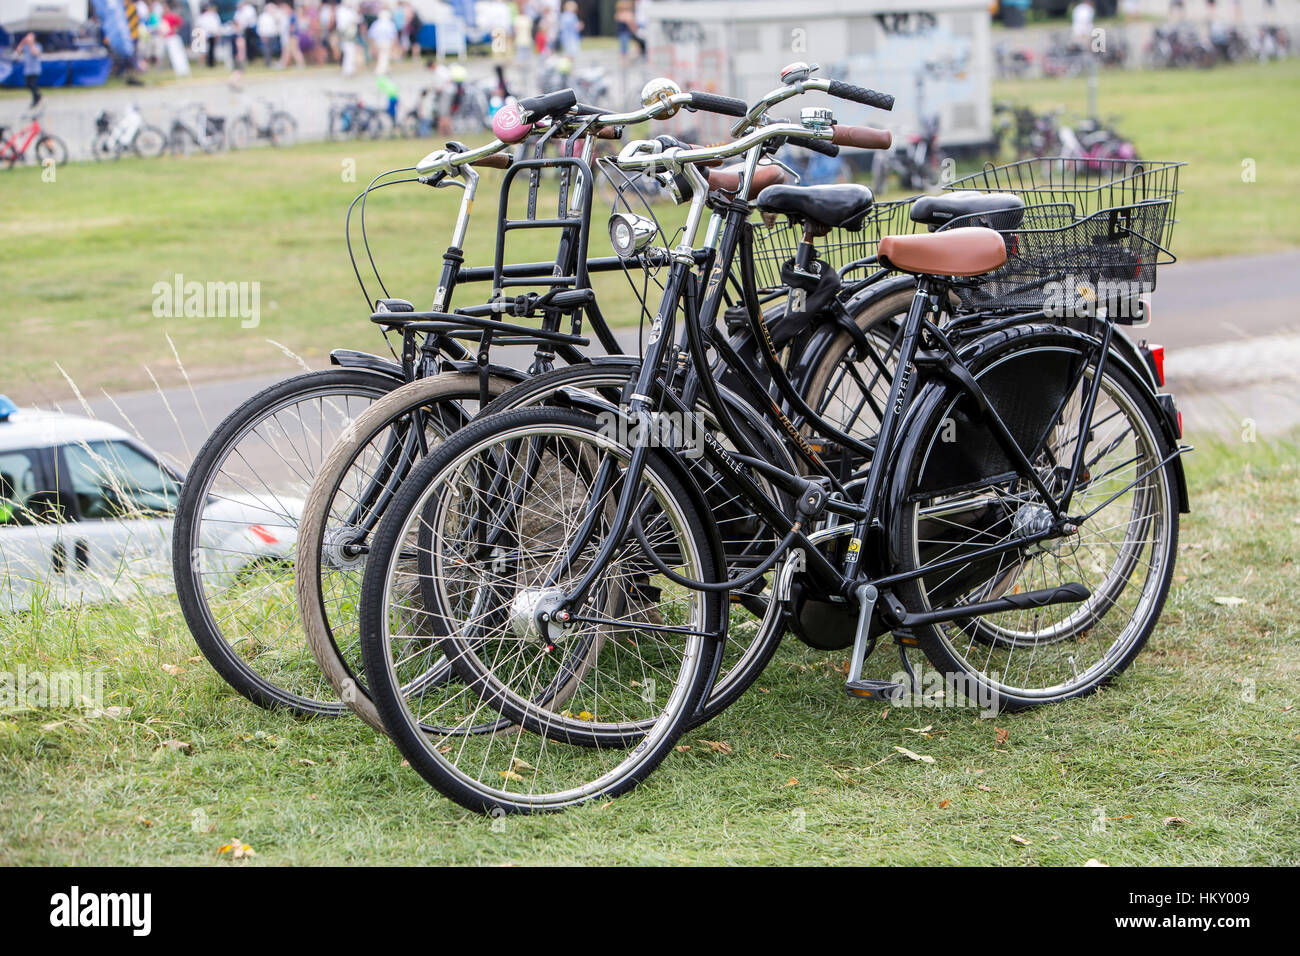 Verschiedene Fahrräder, Holland Stil Fahrräder, alte, retro Felgen, verkettet, geparkt, Stockfoto